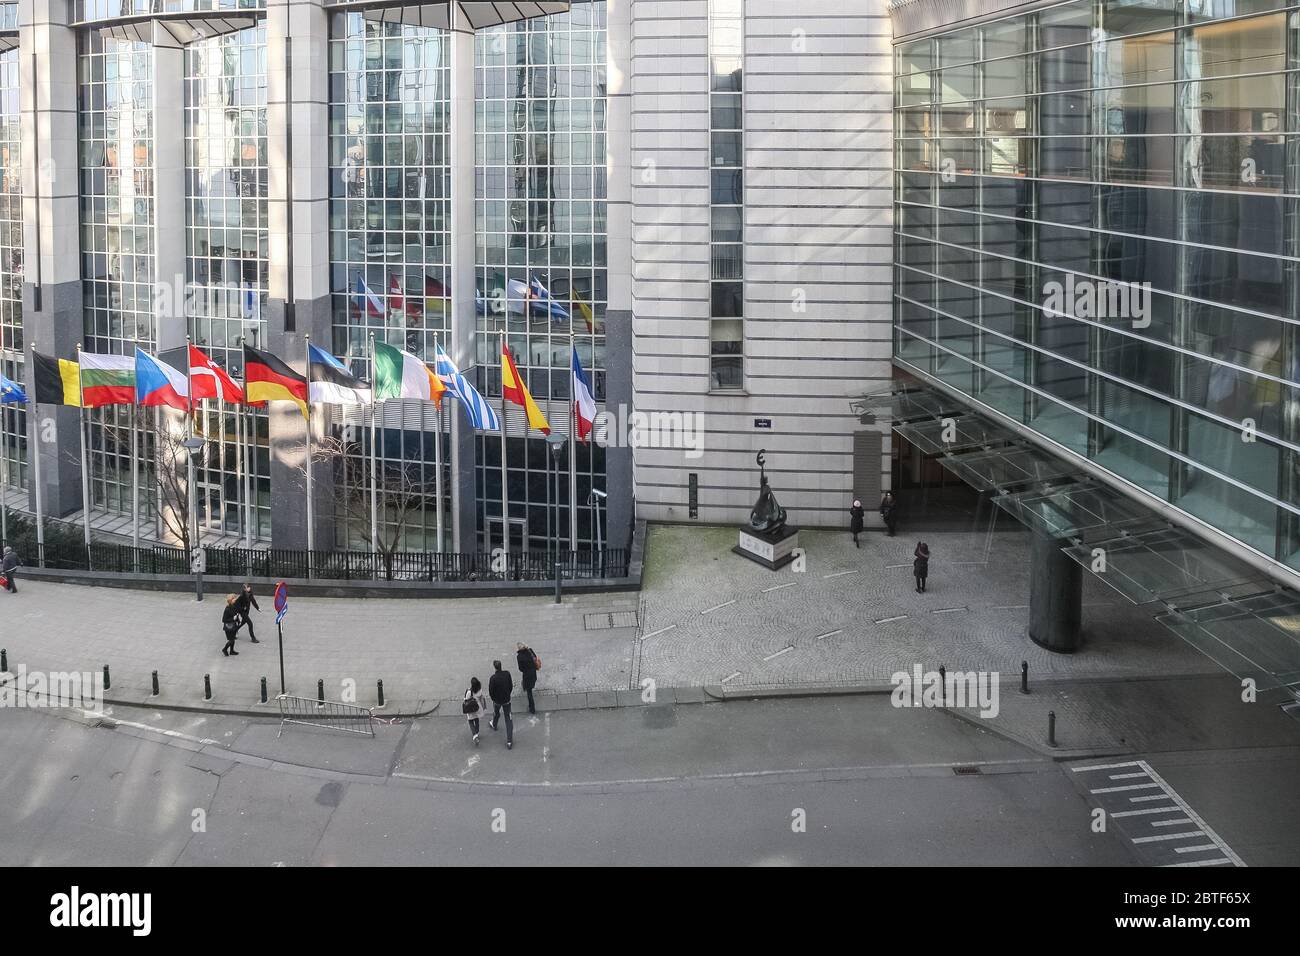 Drapeaux de l'UE hors du Parlement européen, Bruxelles, Belgique - 02 mars 2011 Banque D'Images